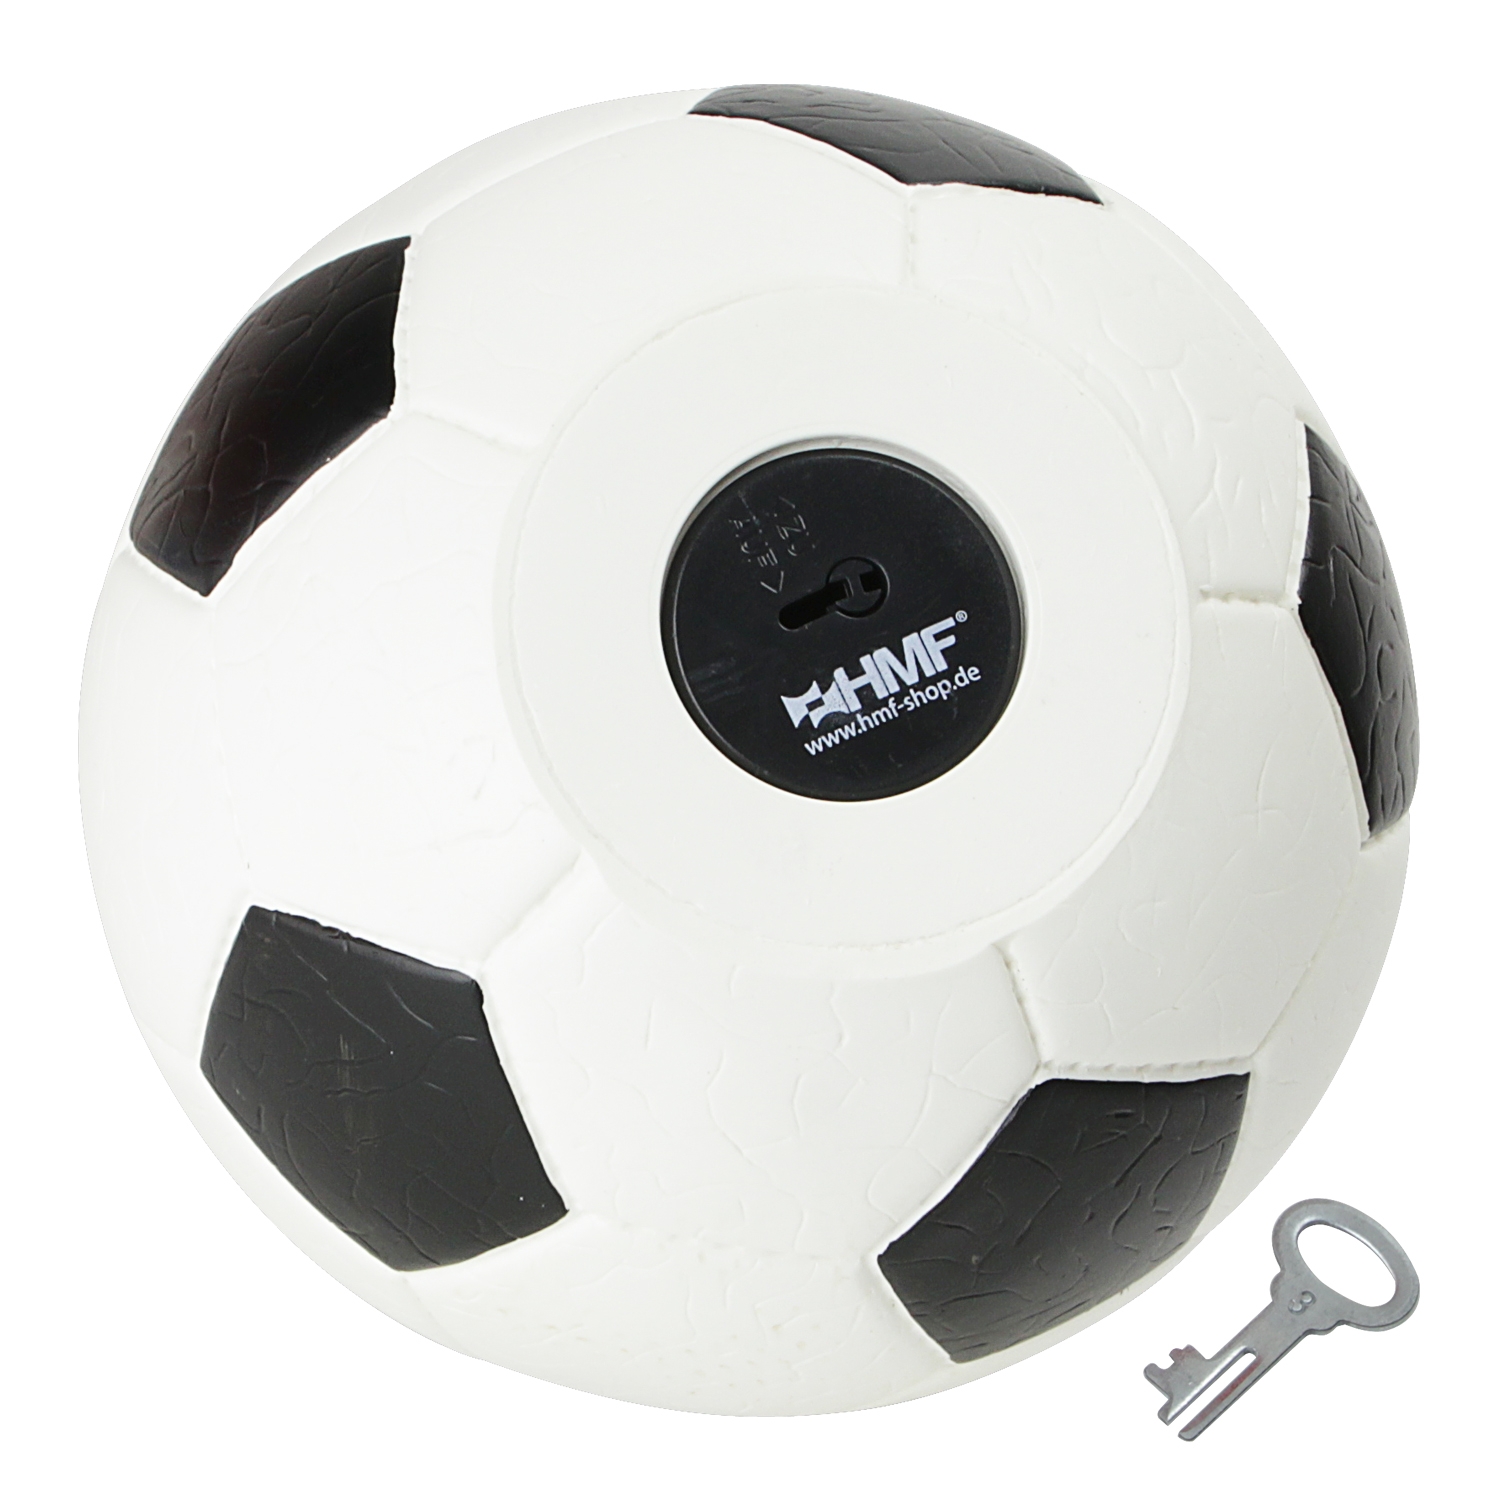 Spardose im Fußball-Look von HMF mit 15 cm Durchmesser in Weiß